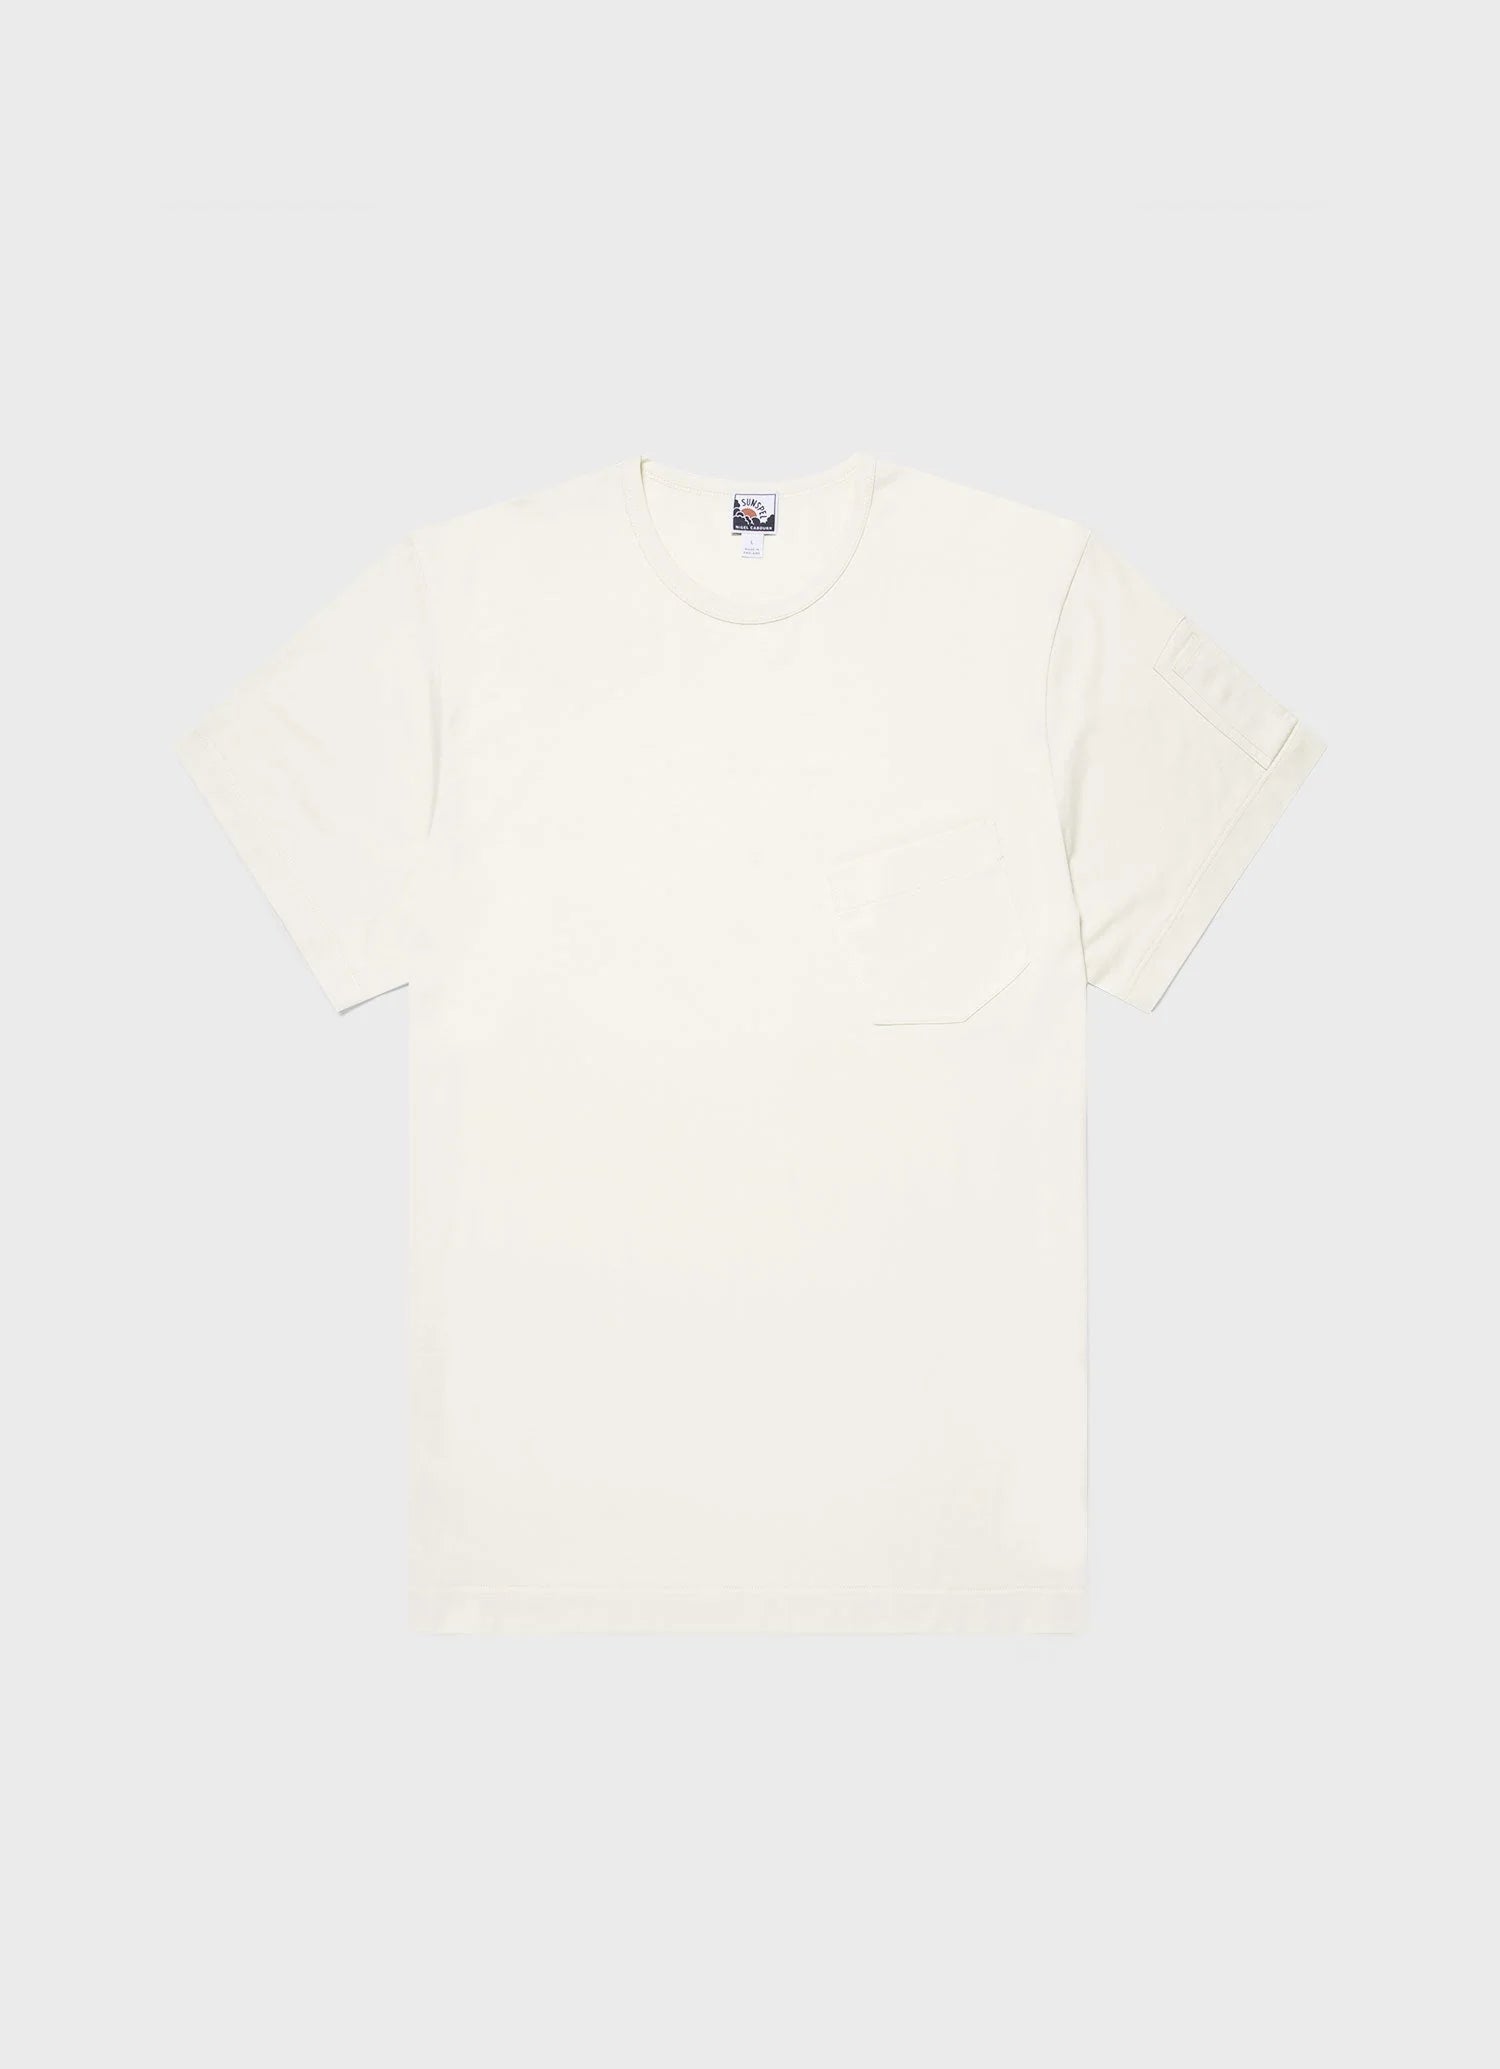 Sunspel x Nigel Cabourn T‑shirt